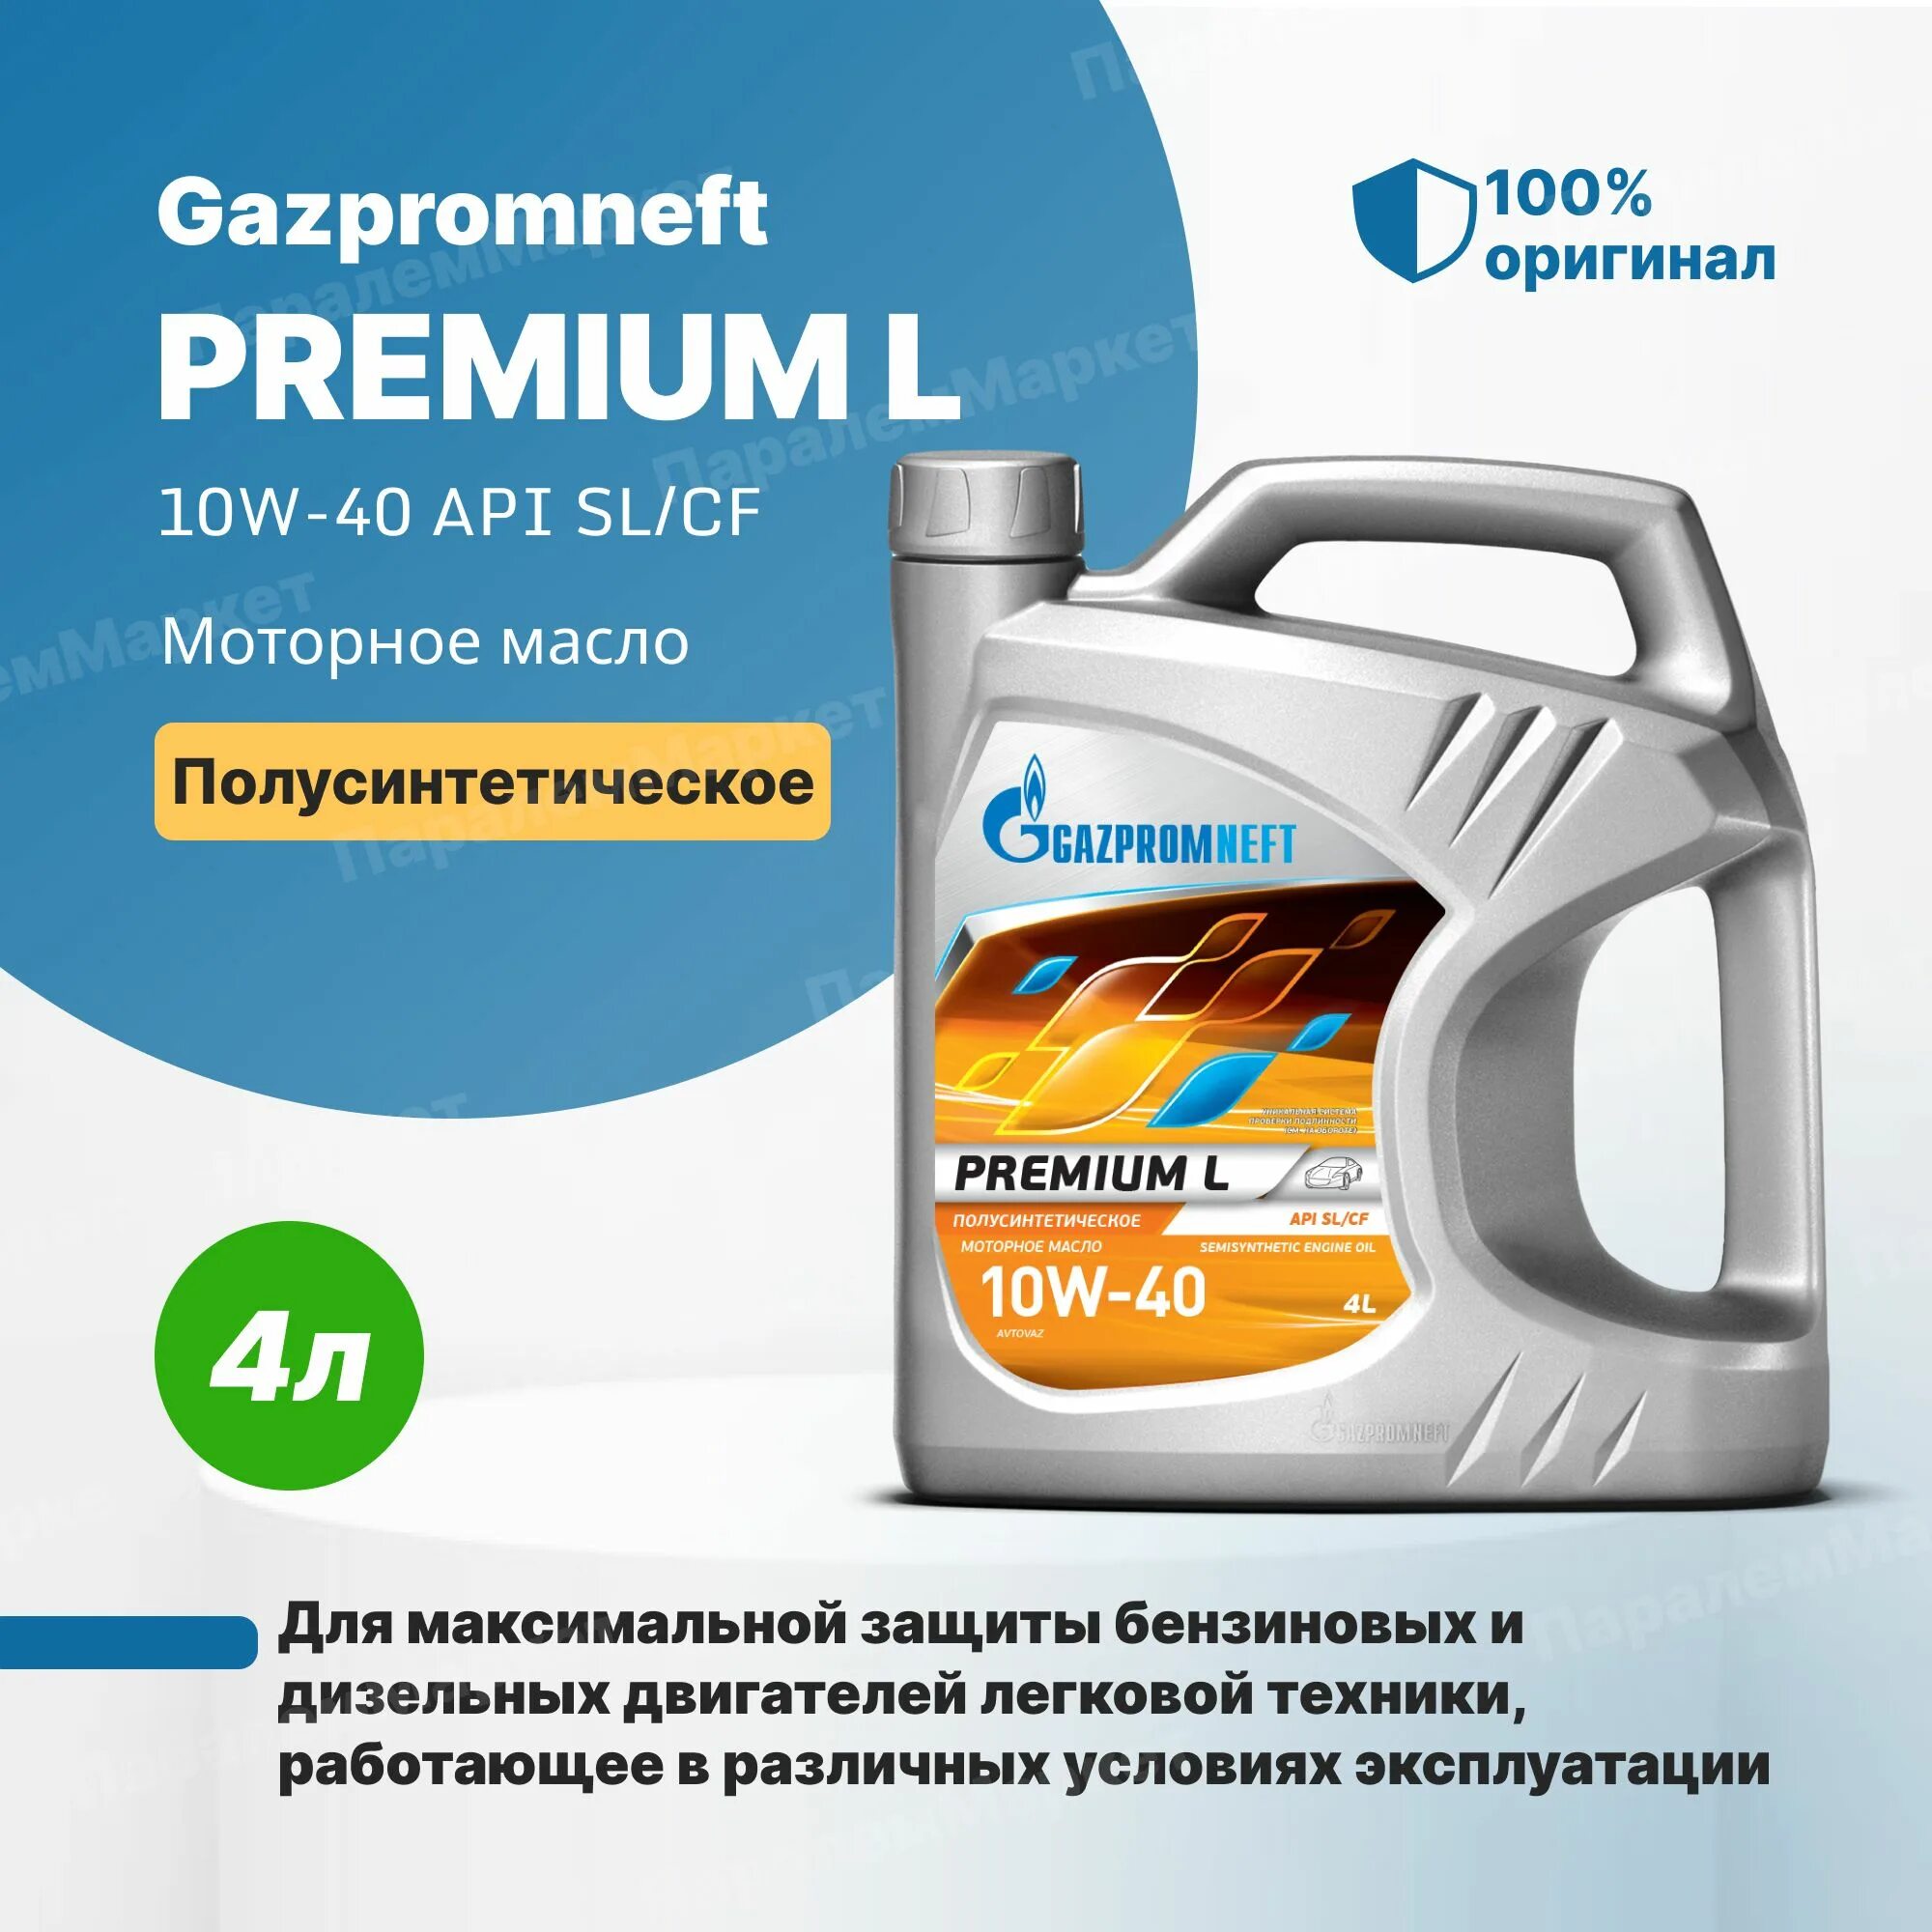 Gazpromneft масло моторное Premium l 10w-40 полусинтетическое 4 л. Газпромнефть премиум л 10w-40. Масло Газпромнефть 10w 40 премиум л. Газпромнефть премиум 5w40 отзывы